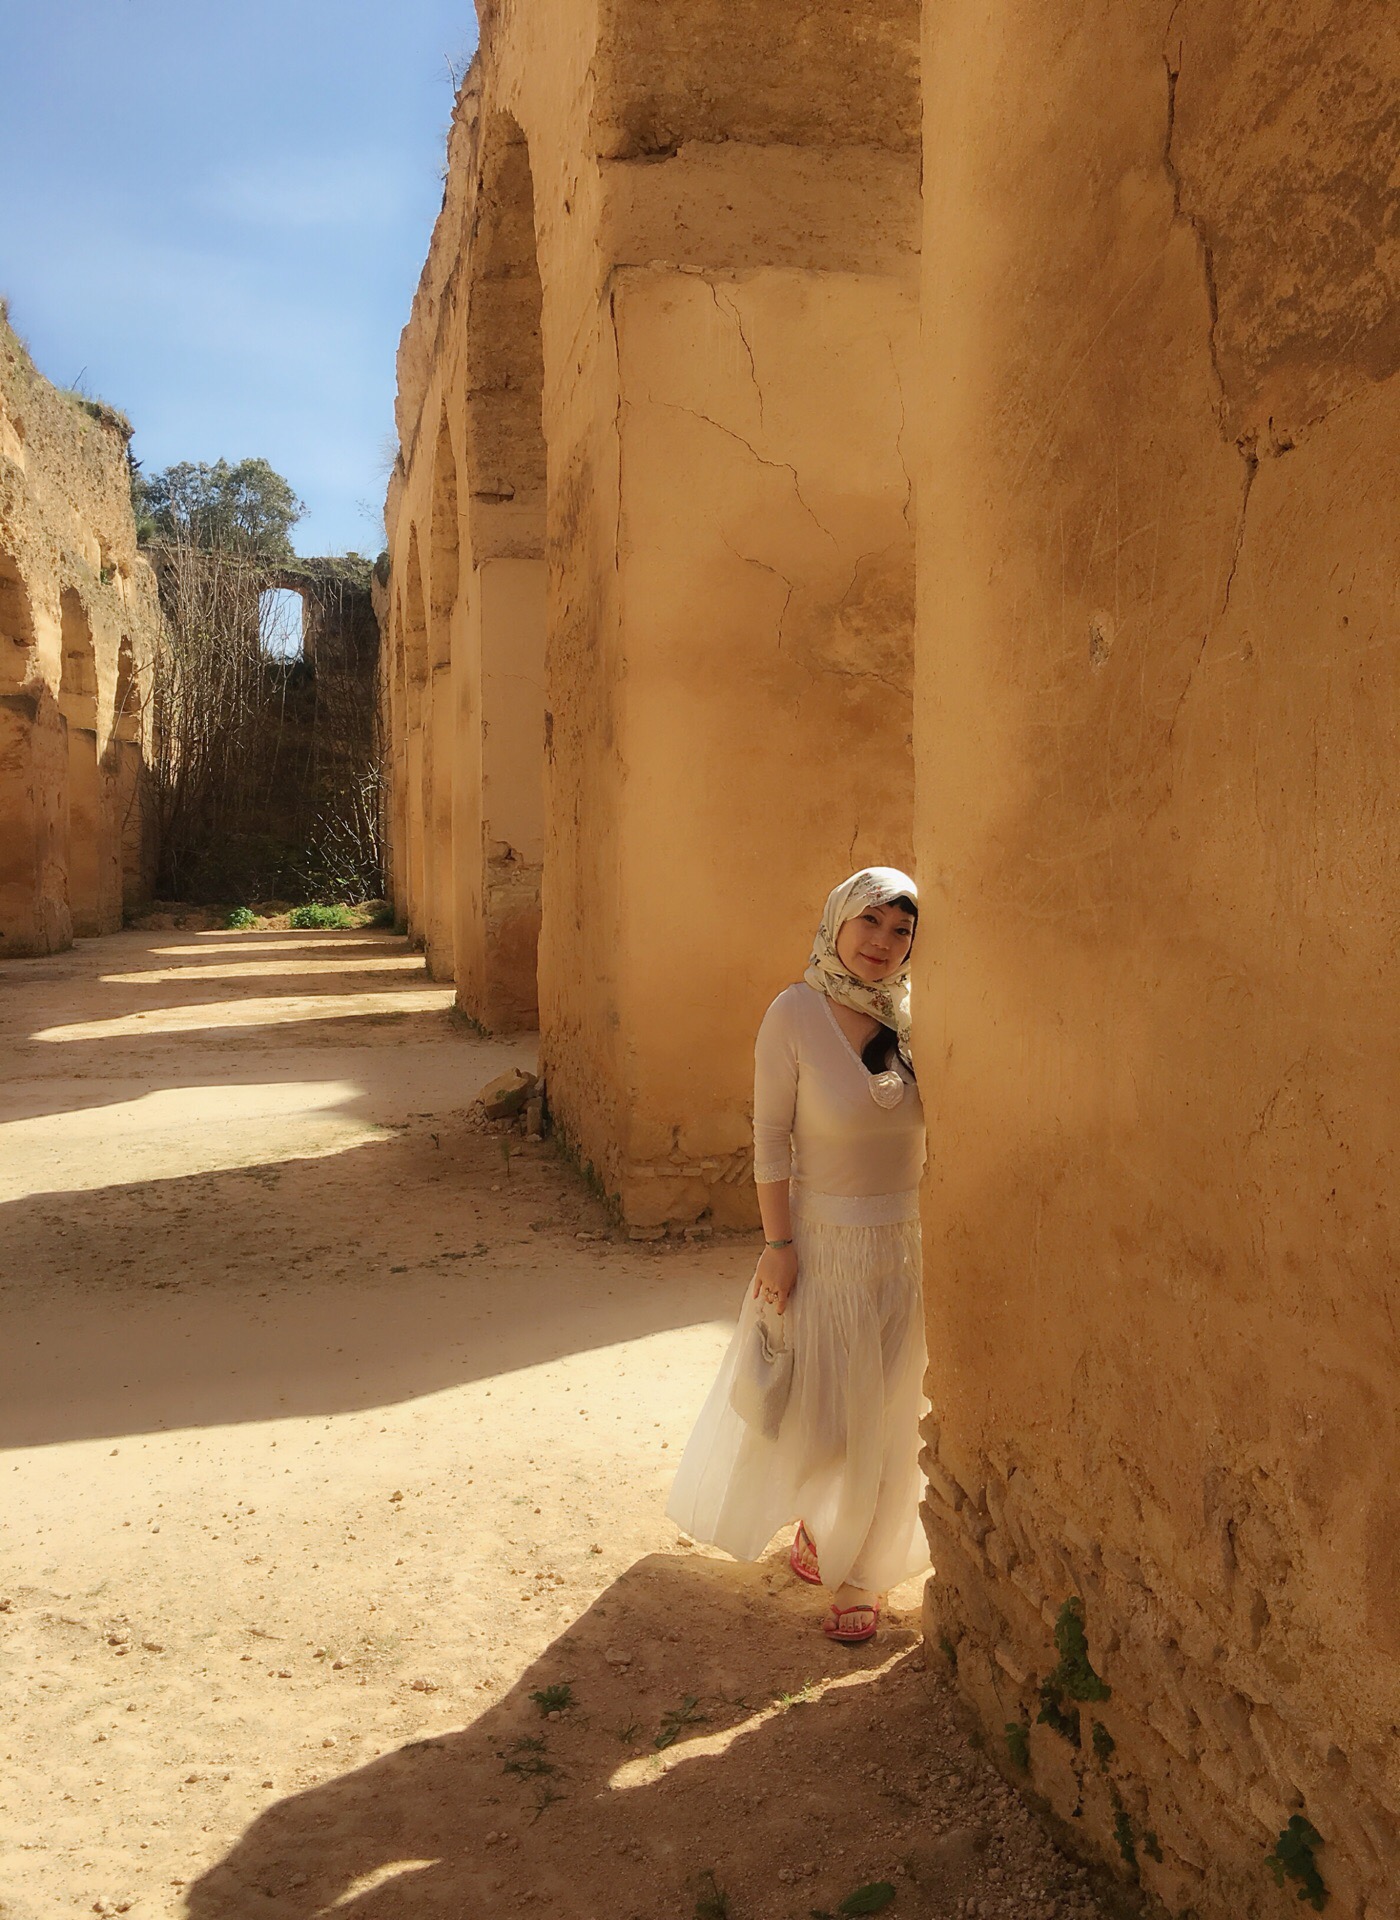 岁月的长廊～摩洛哥凡尔赛”之城的始建于17世纪的皇城梅克内斯～皇家马厩及苏阿尼粮库